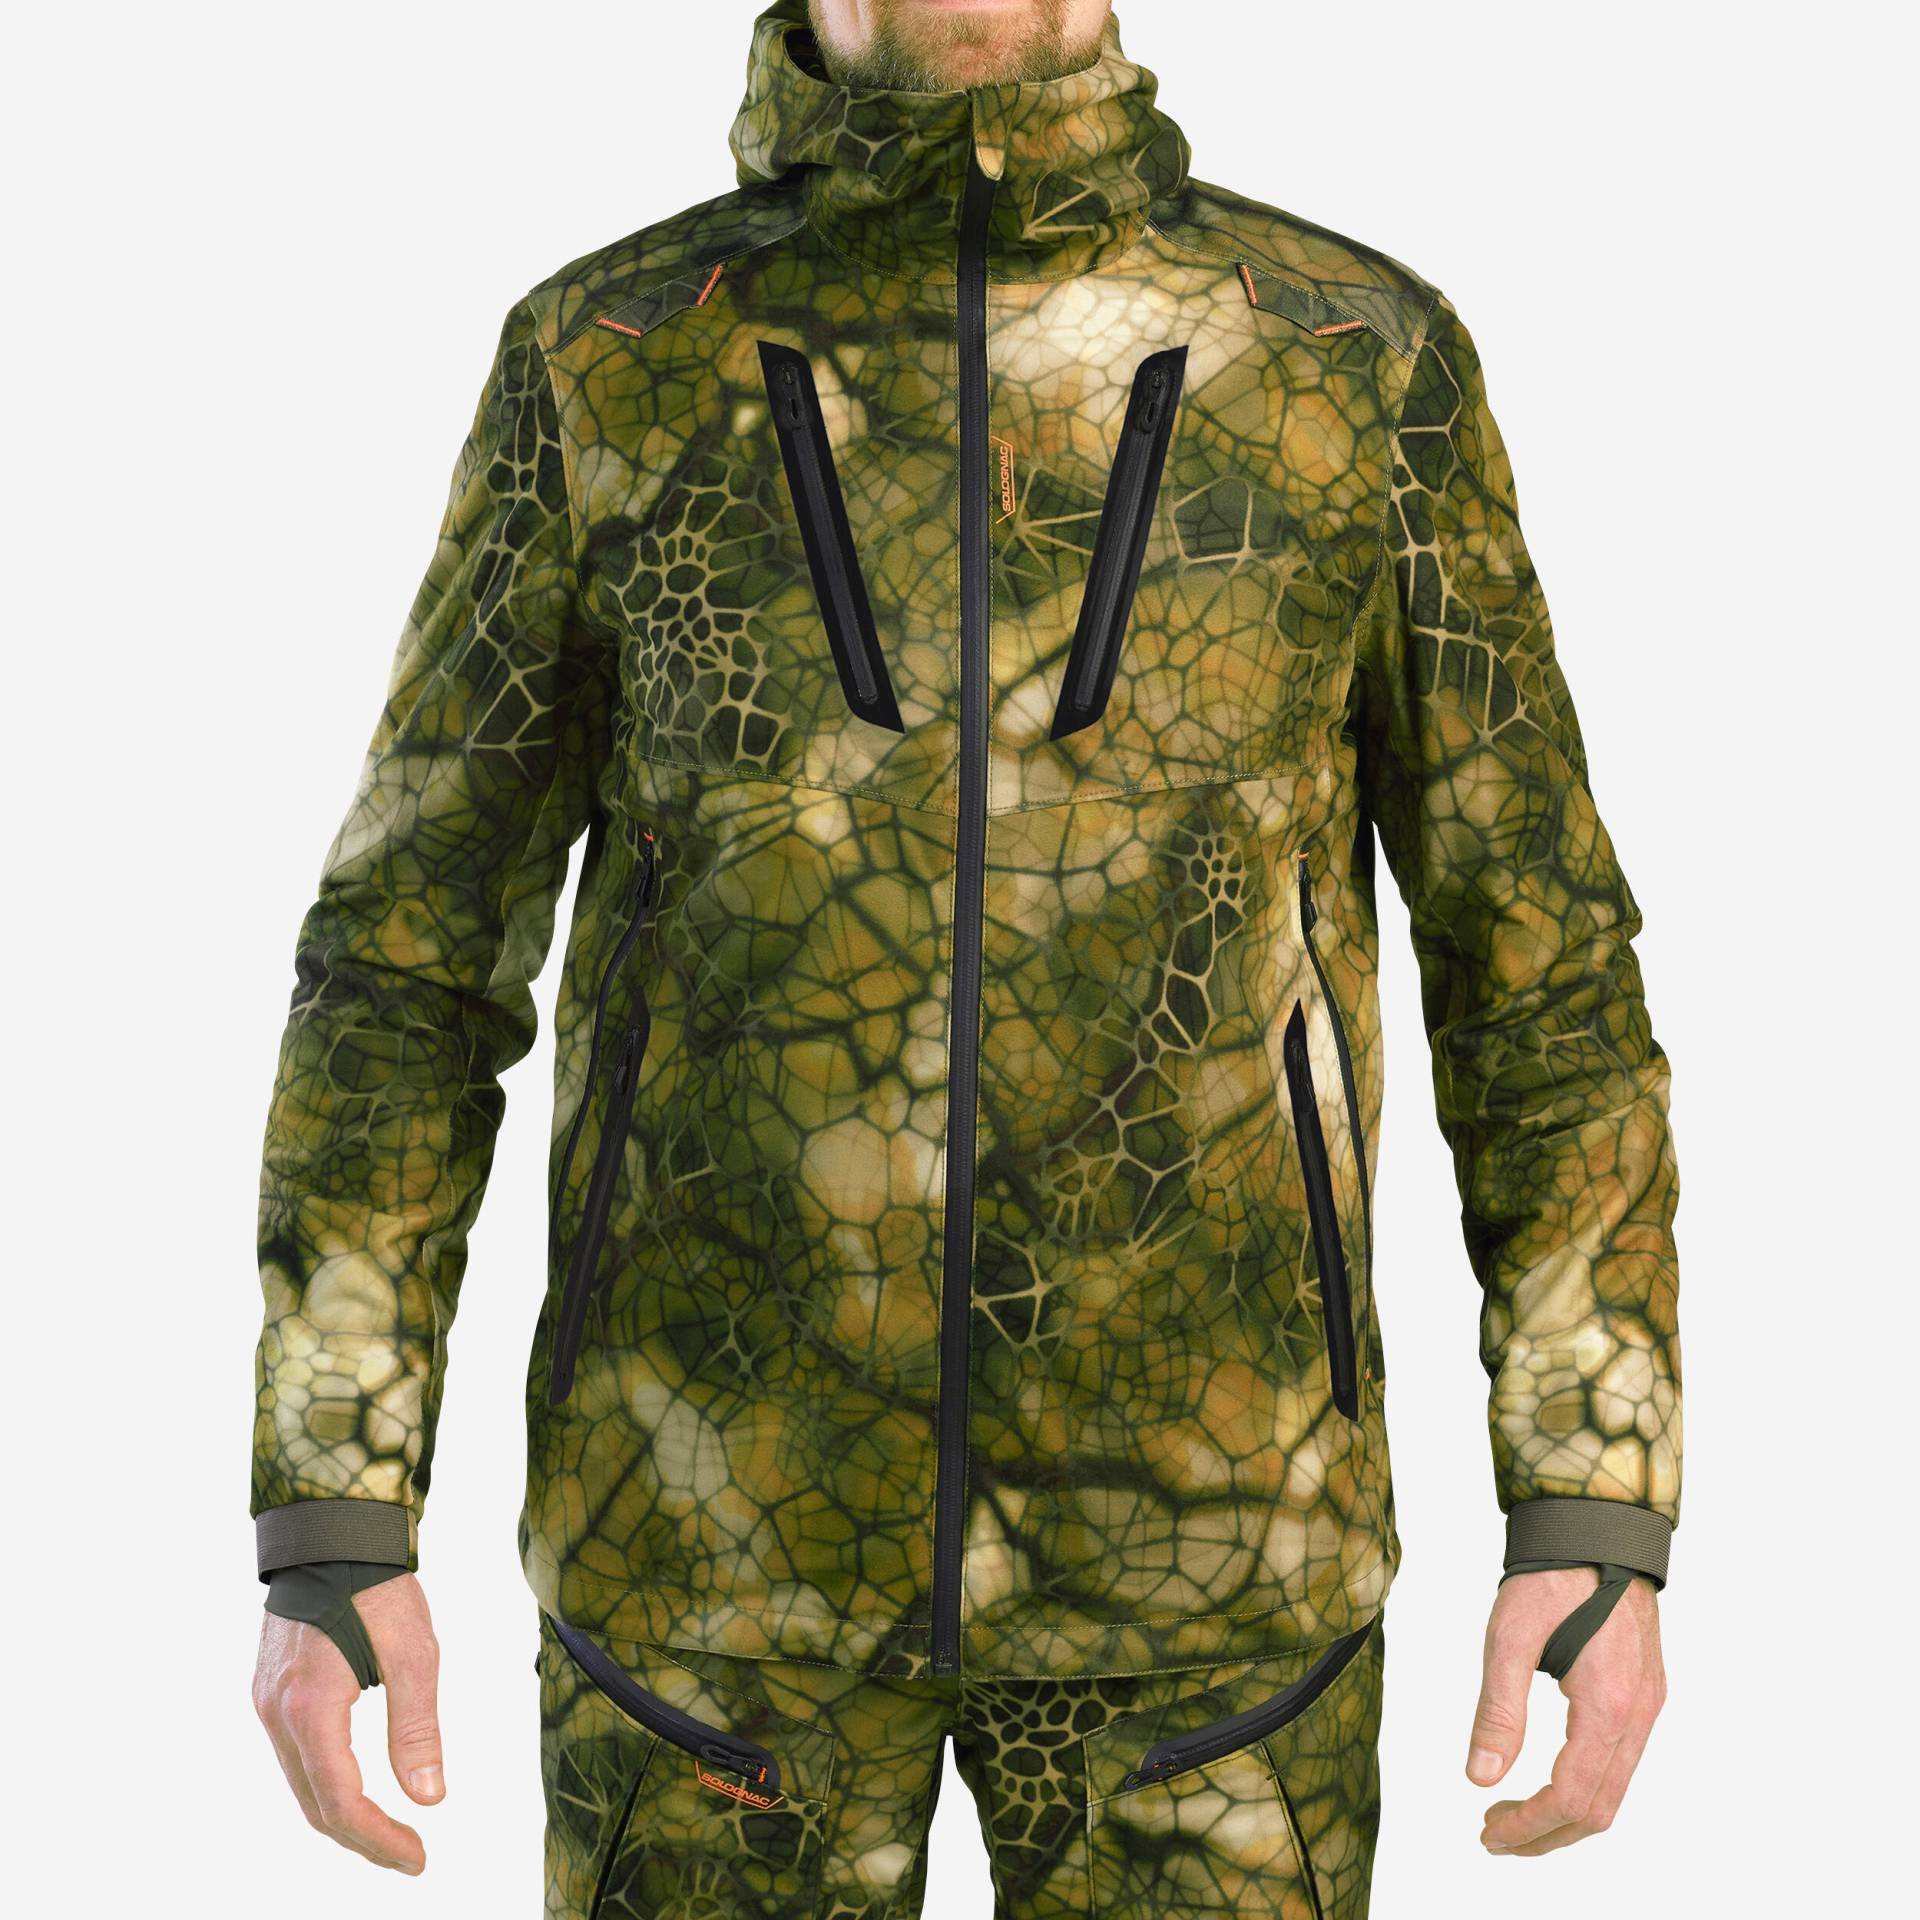 Jagd-Regenjacke FURTIV 900 geräuscharm warm camouflage von SOLOGNAC